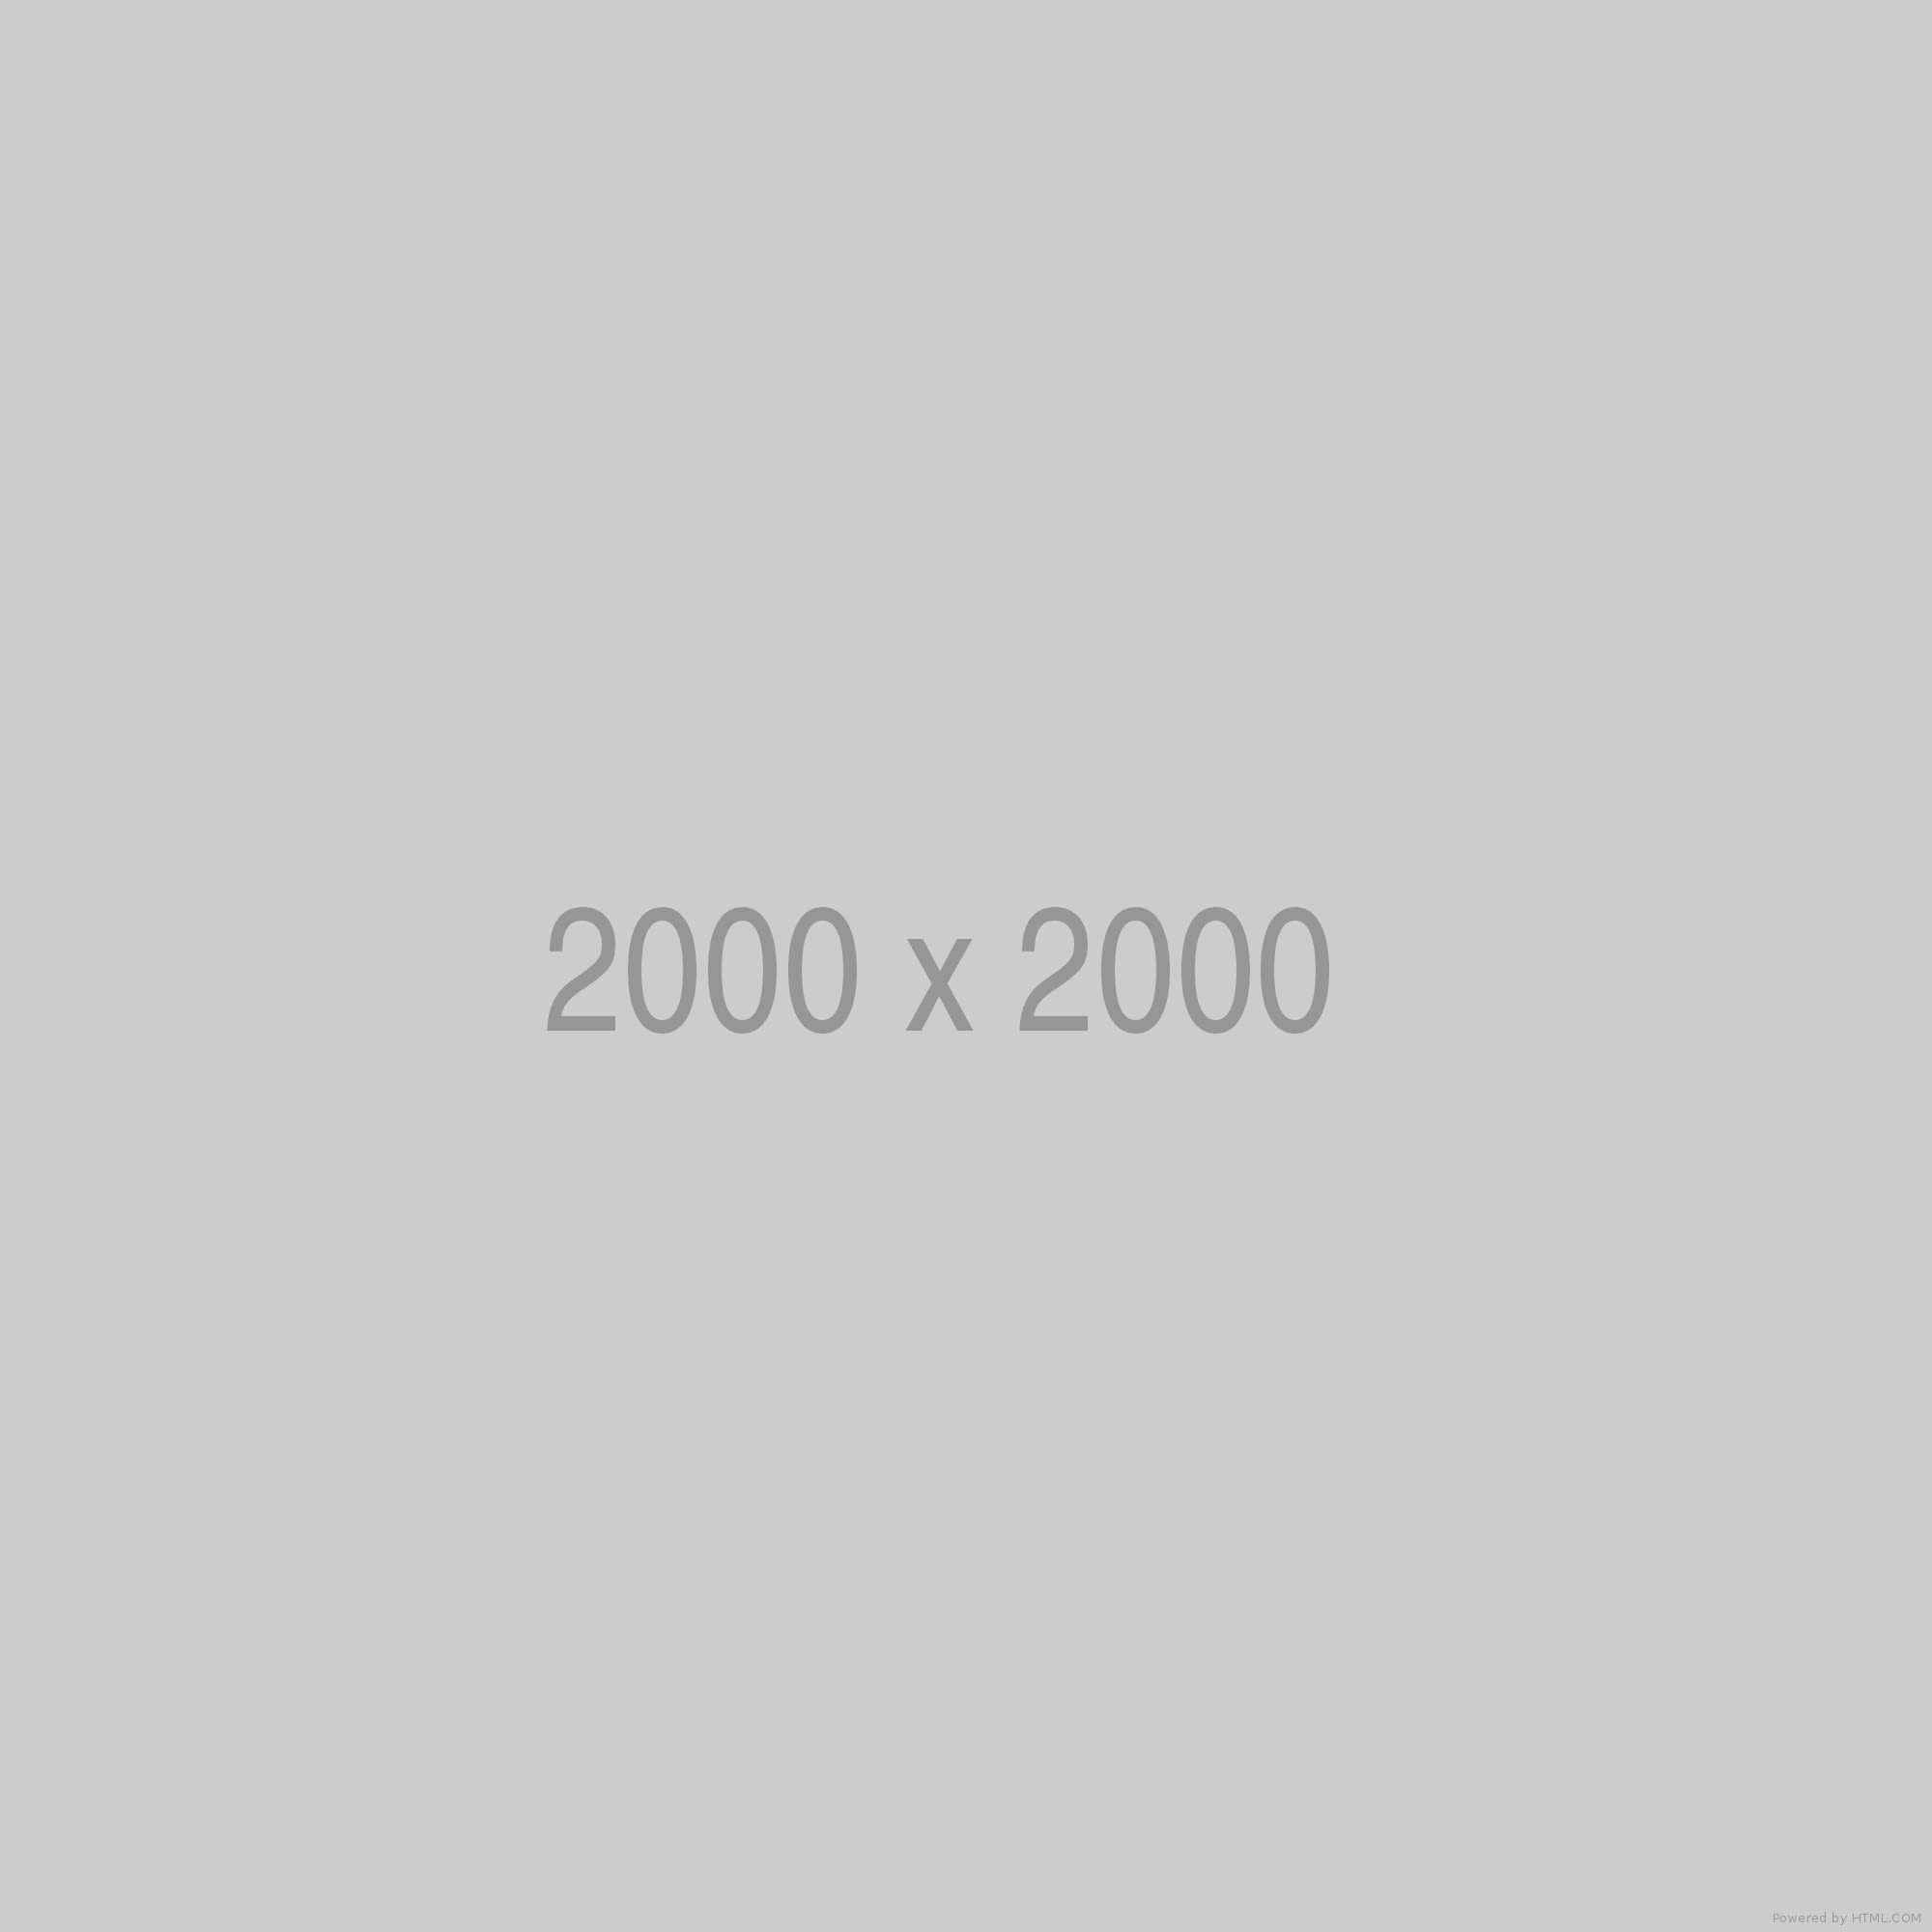 200 1а. 200 На 200. 200 На 200 пикселей. Изображение 200x200. 200x200 картинки.